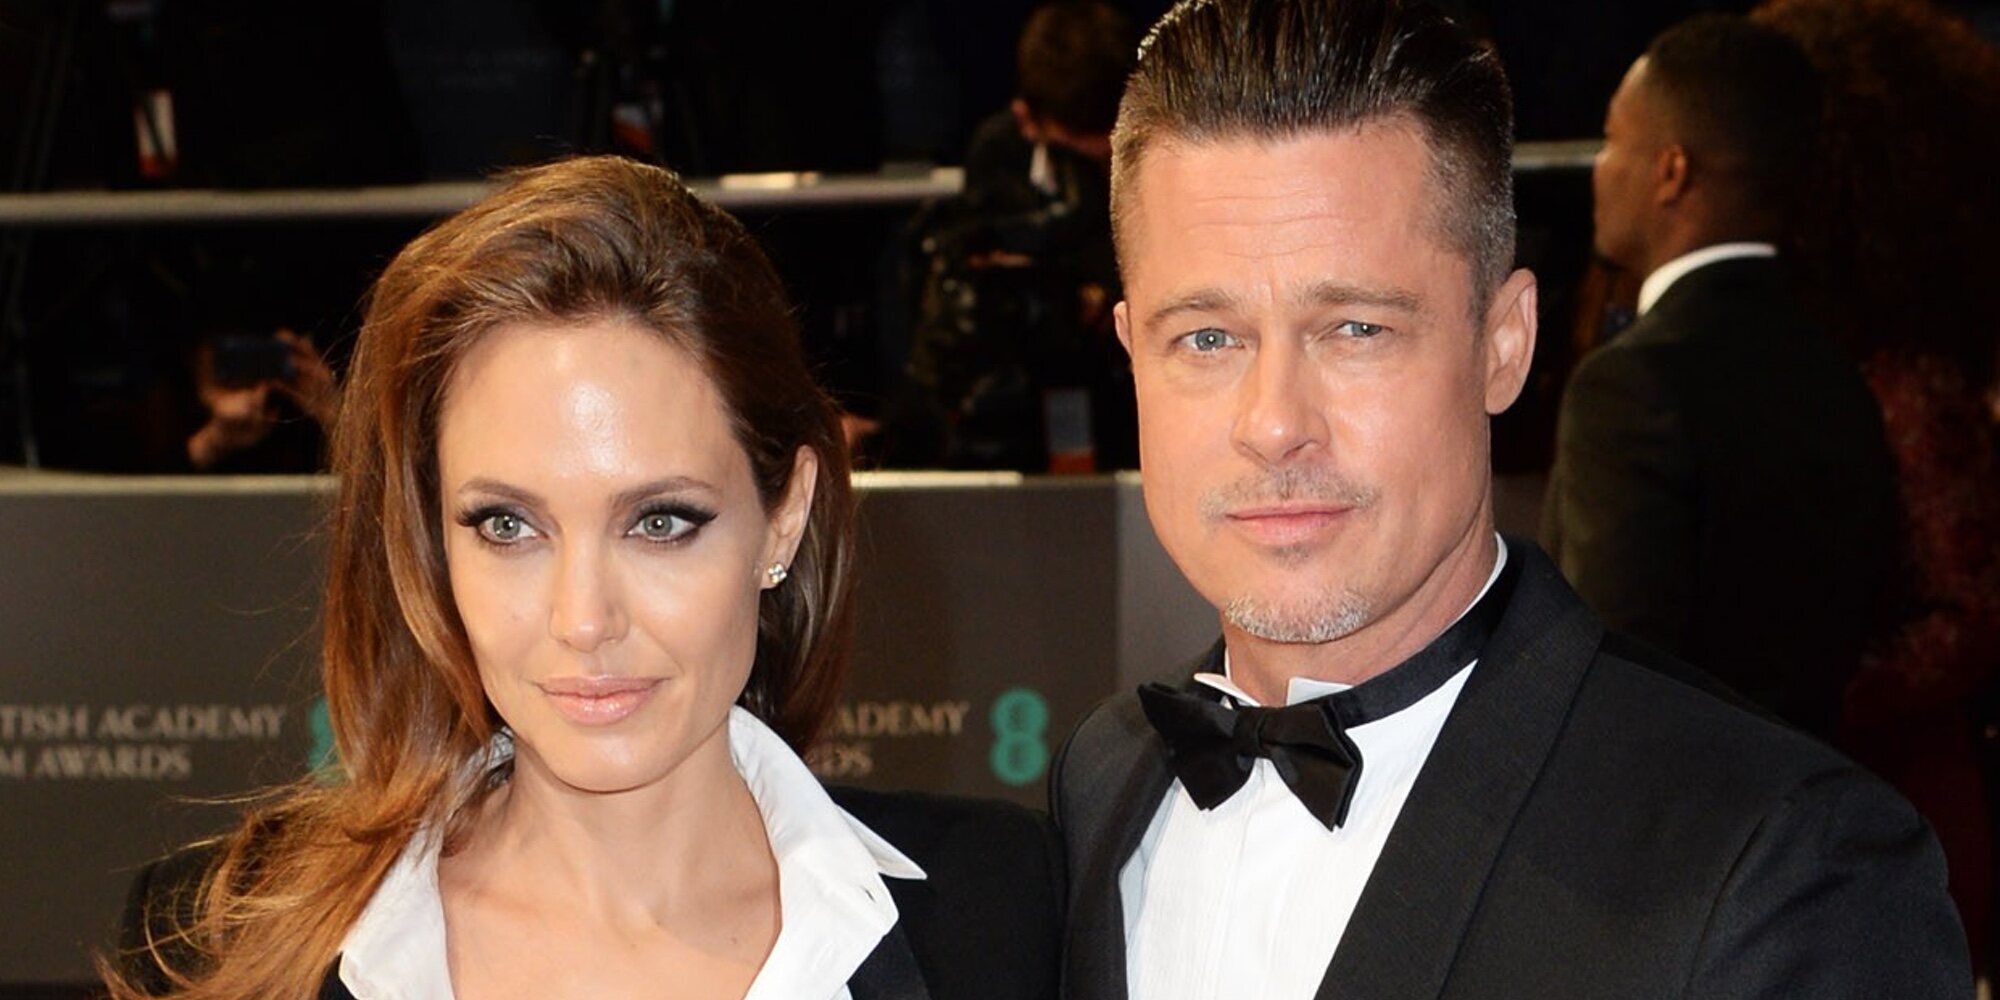 Se filtra un correo que Angelina Jolie mandó a Brad Pitt donde revela los motivos de la venta de su polémica bodega